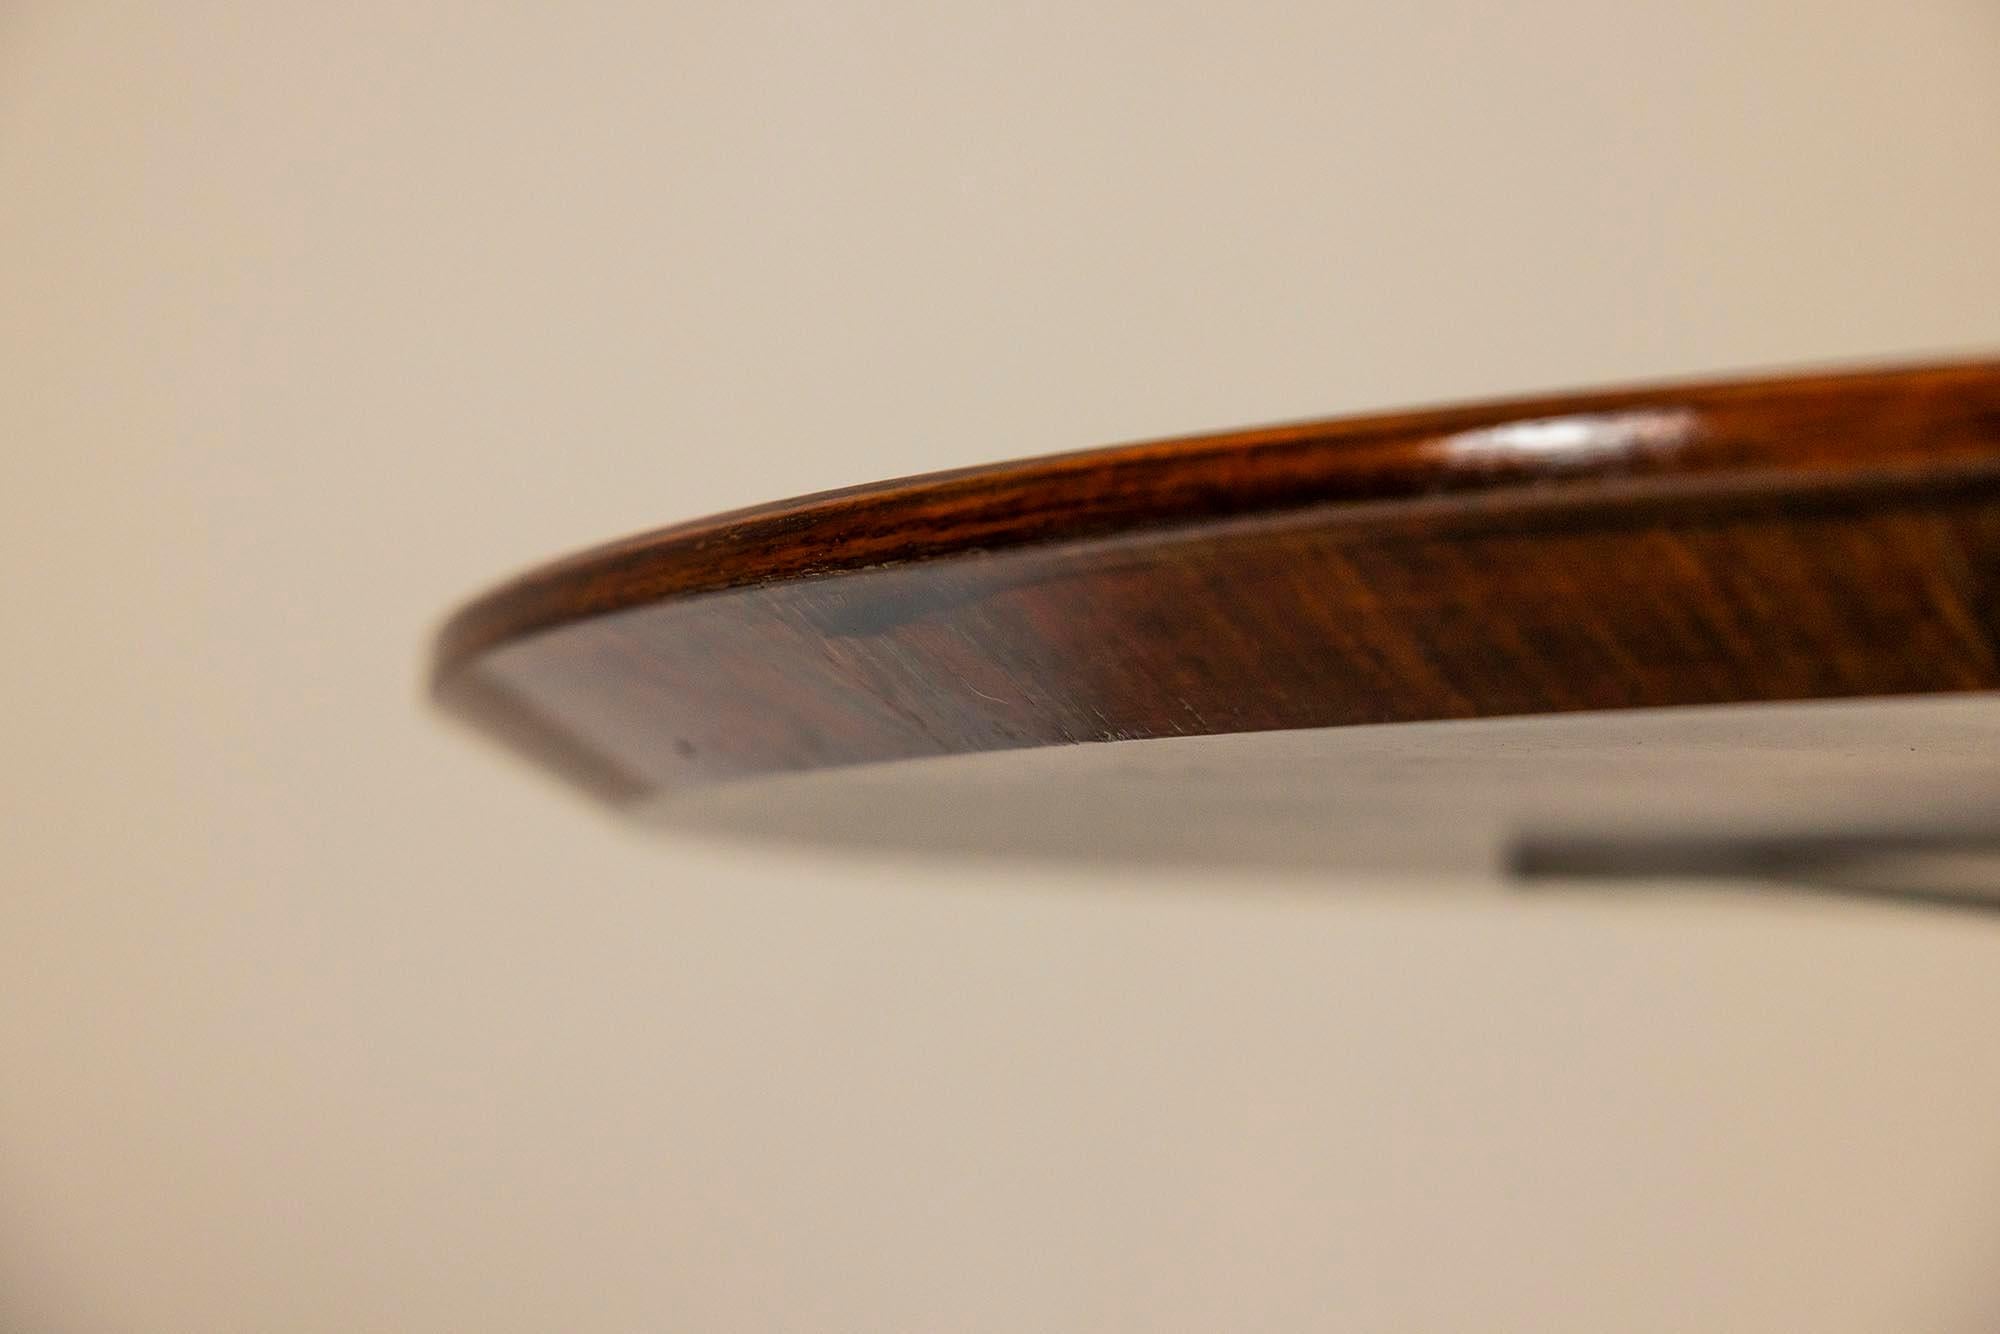 Table basse ronde italienne Formanova en placage de bois de rose et acier inoxydable brossé des années 1960. Une charmante table basse ronde fabriquée par Formanova exécutée en bois de rose et en acier brossé. Cette table a une apparence forte grâce